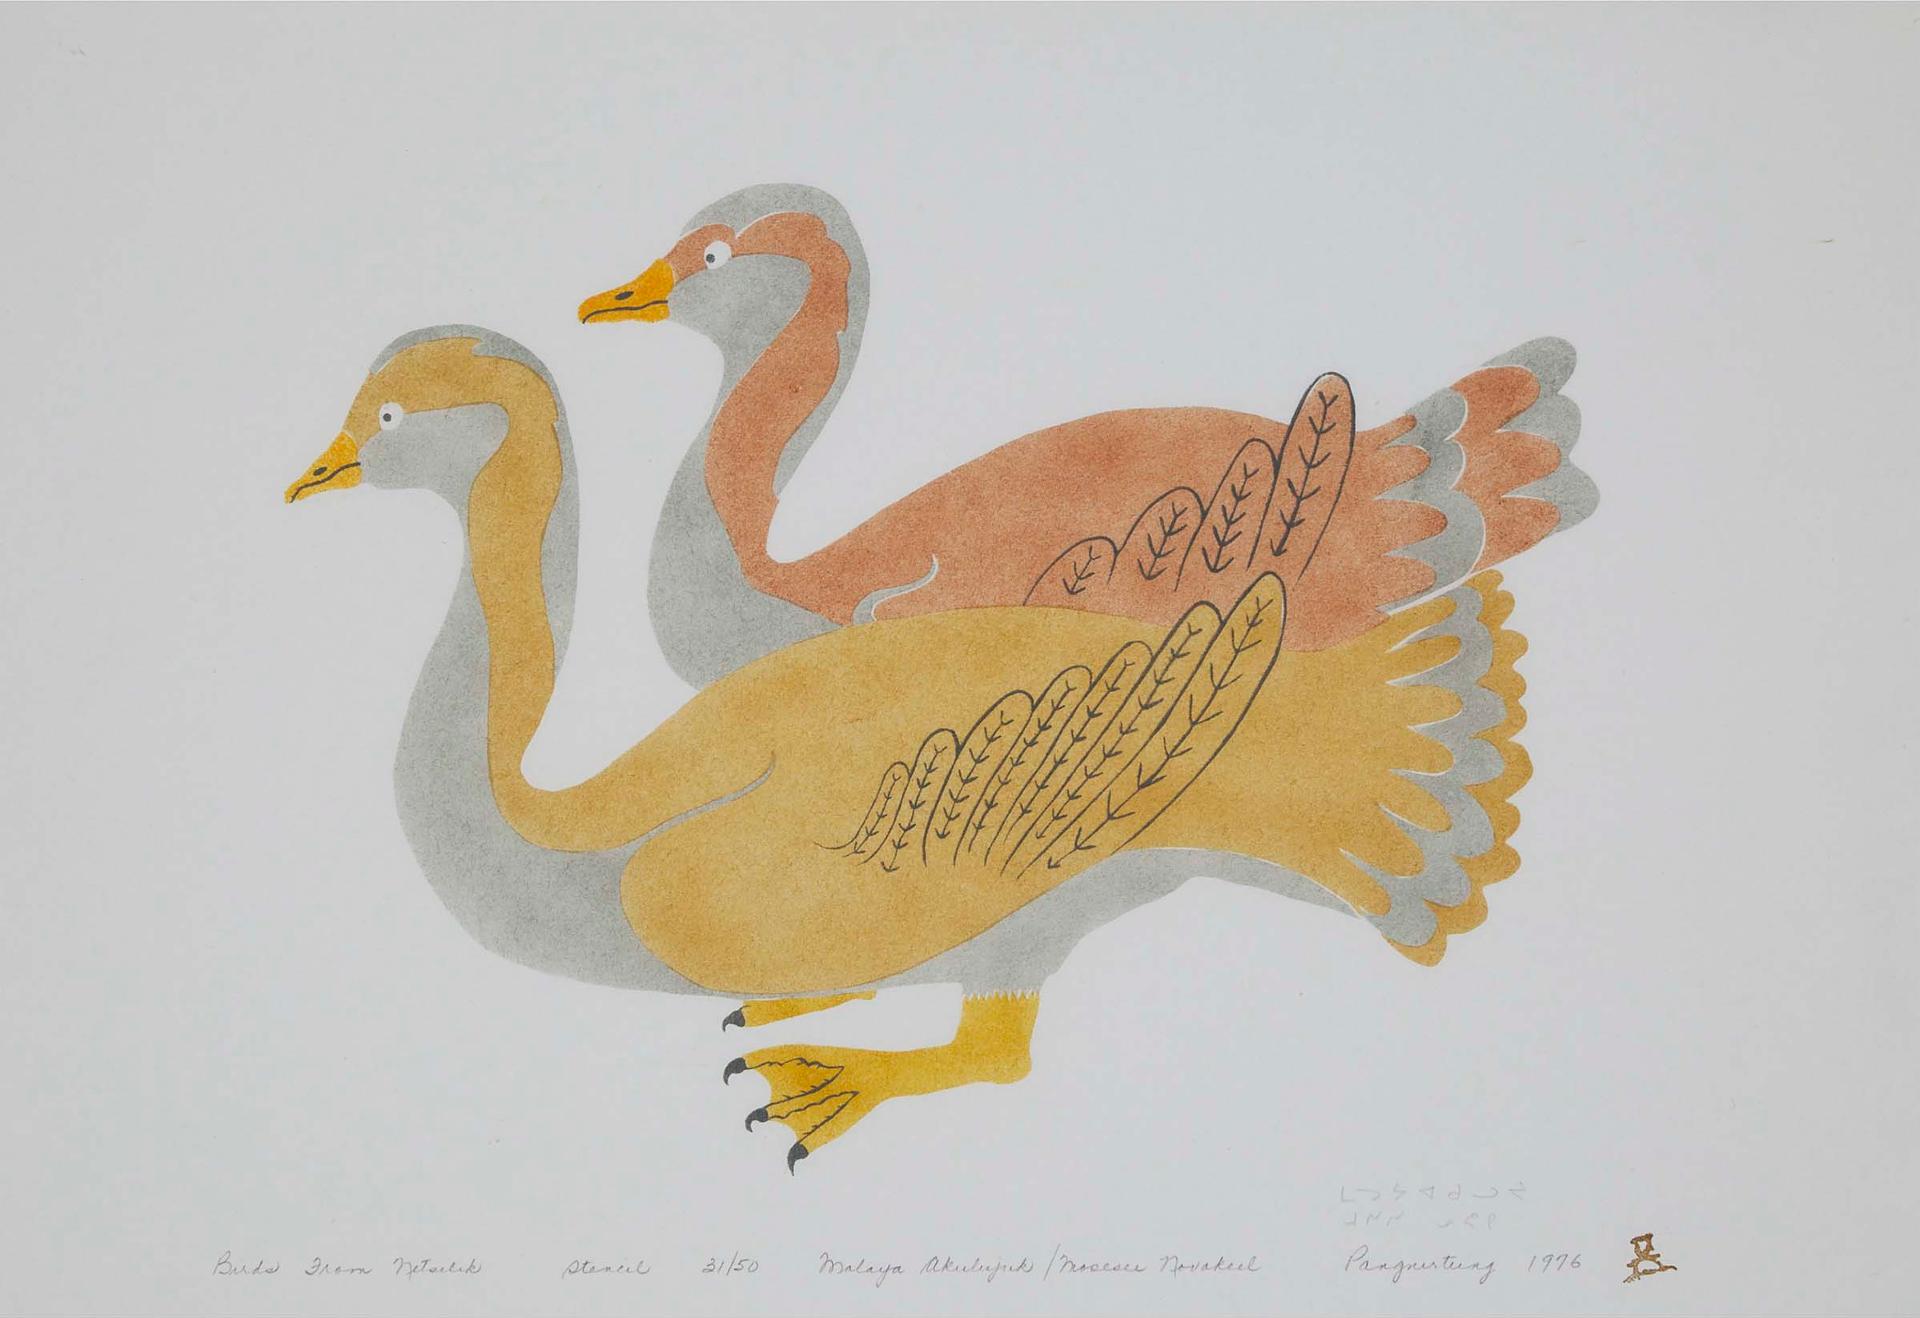 Malaya Akulukjuk (1915-1995) - Birds From Netsilik